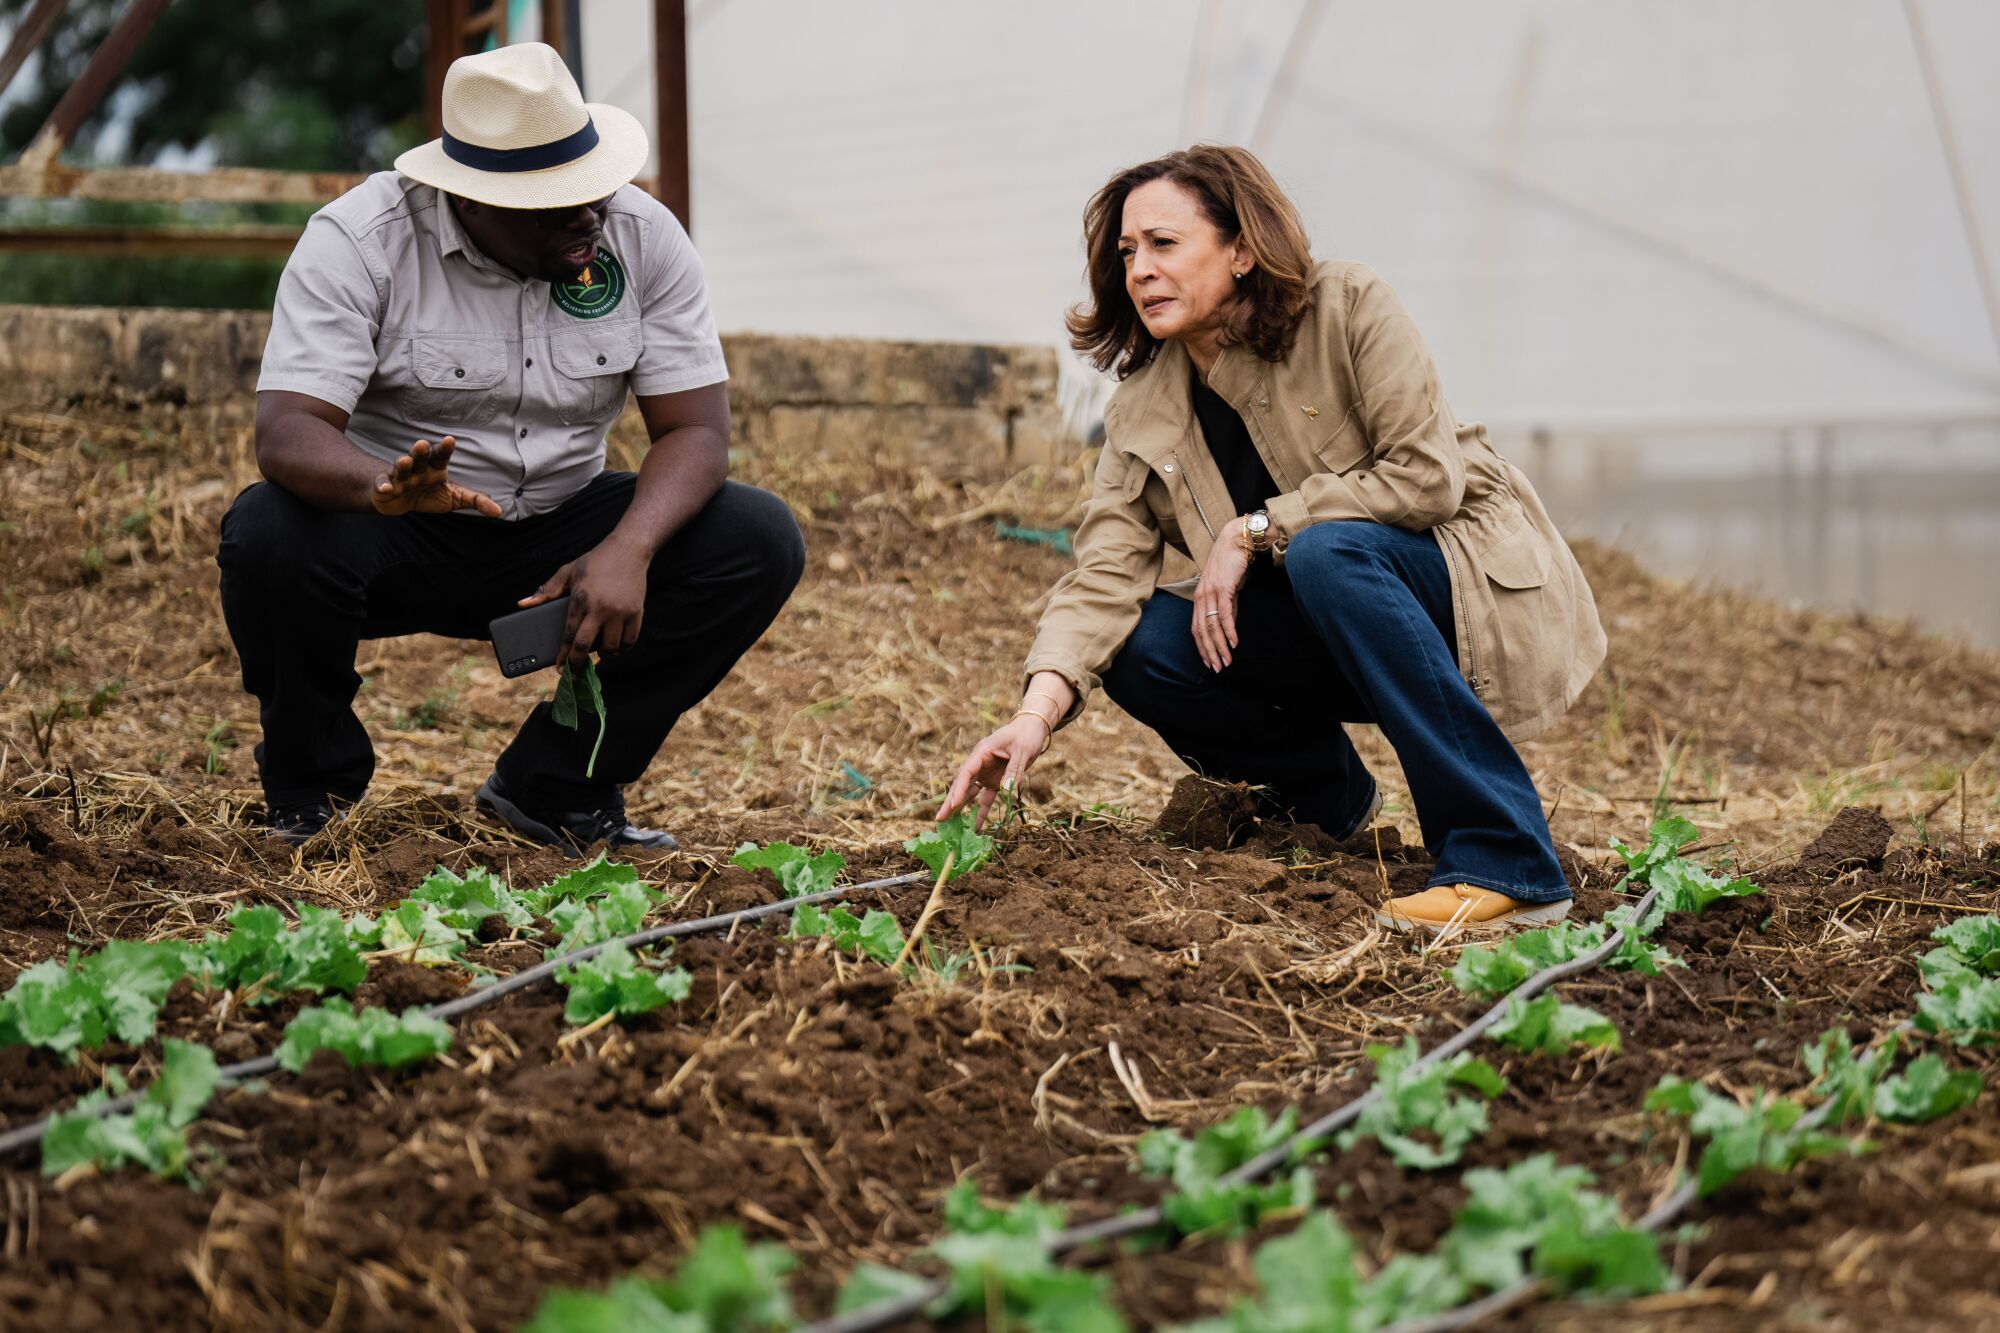 Bruno Mweemba gives U.S. Vice President Kamala Harris a tour of a farm near Lusaka, Zambia.